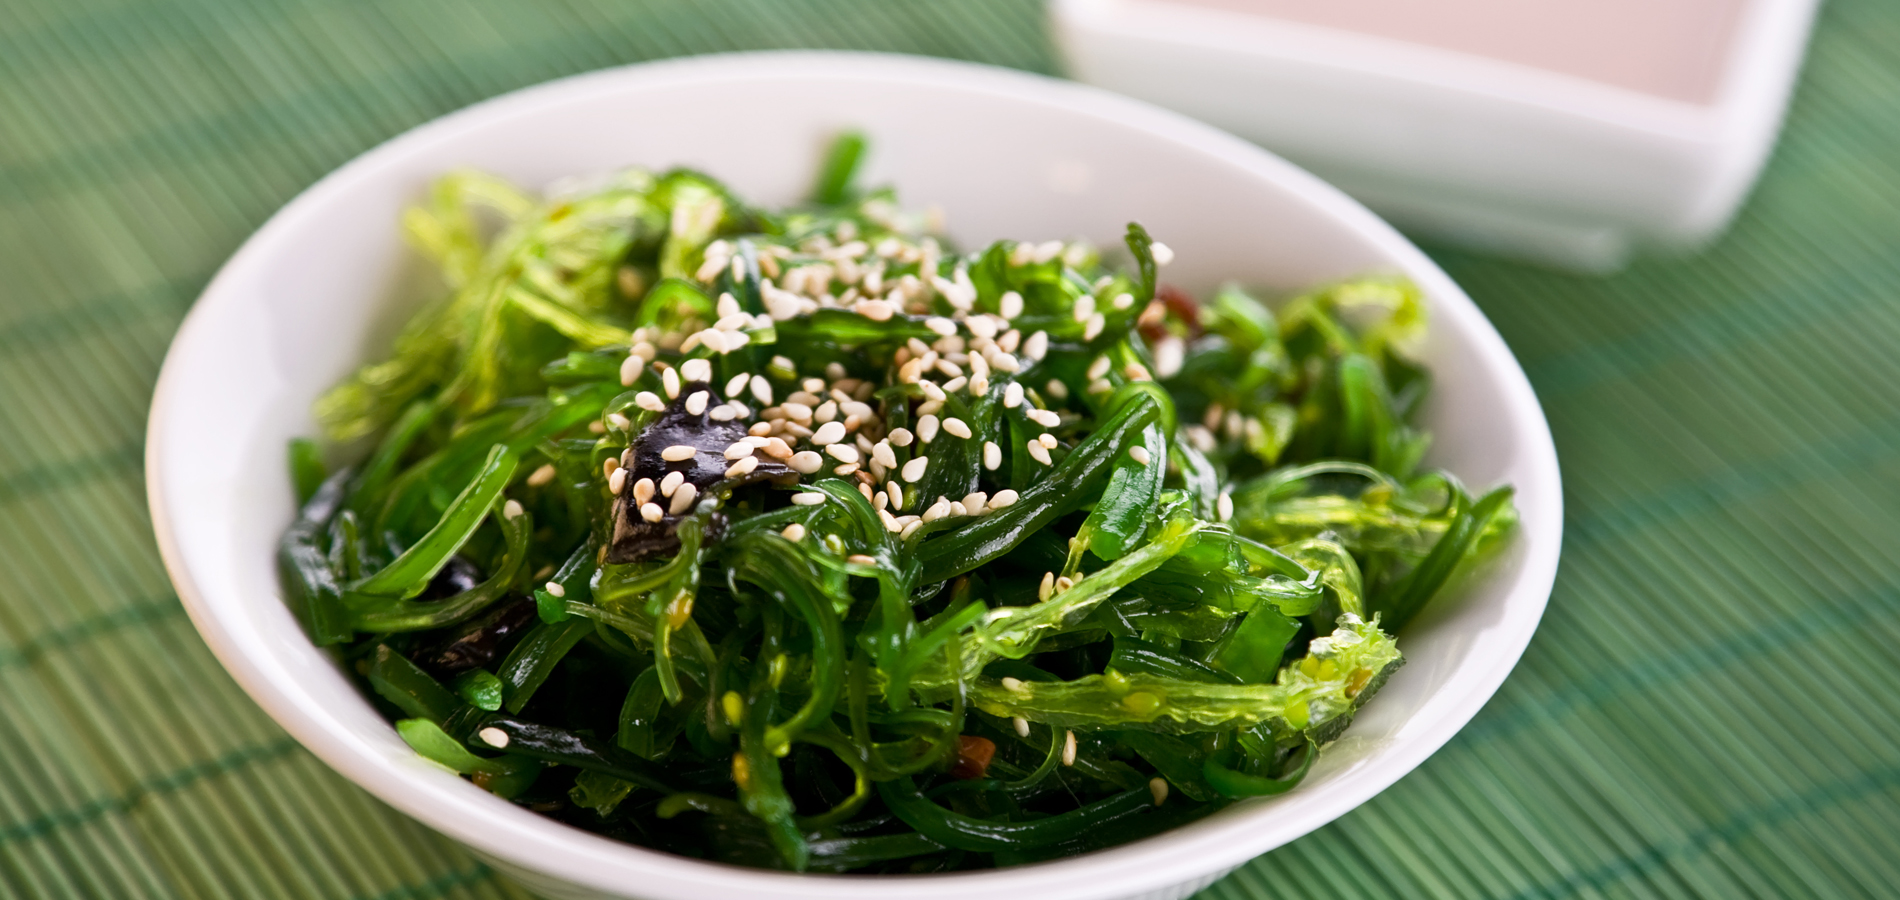 Comment cuisiner les algues fraîches salées au quotidien ? – BRETALG